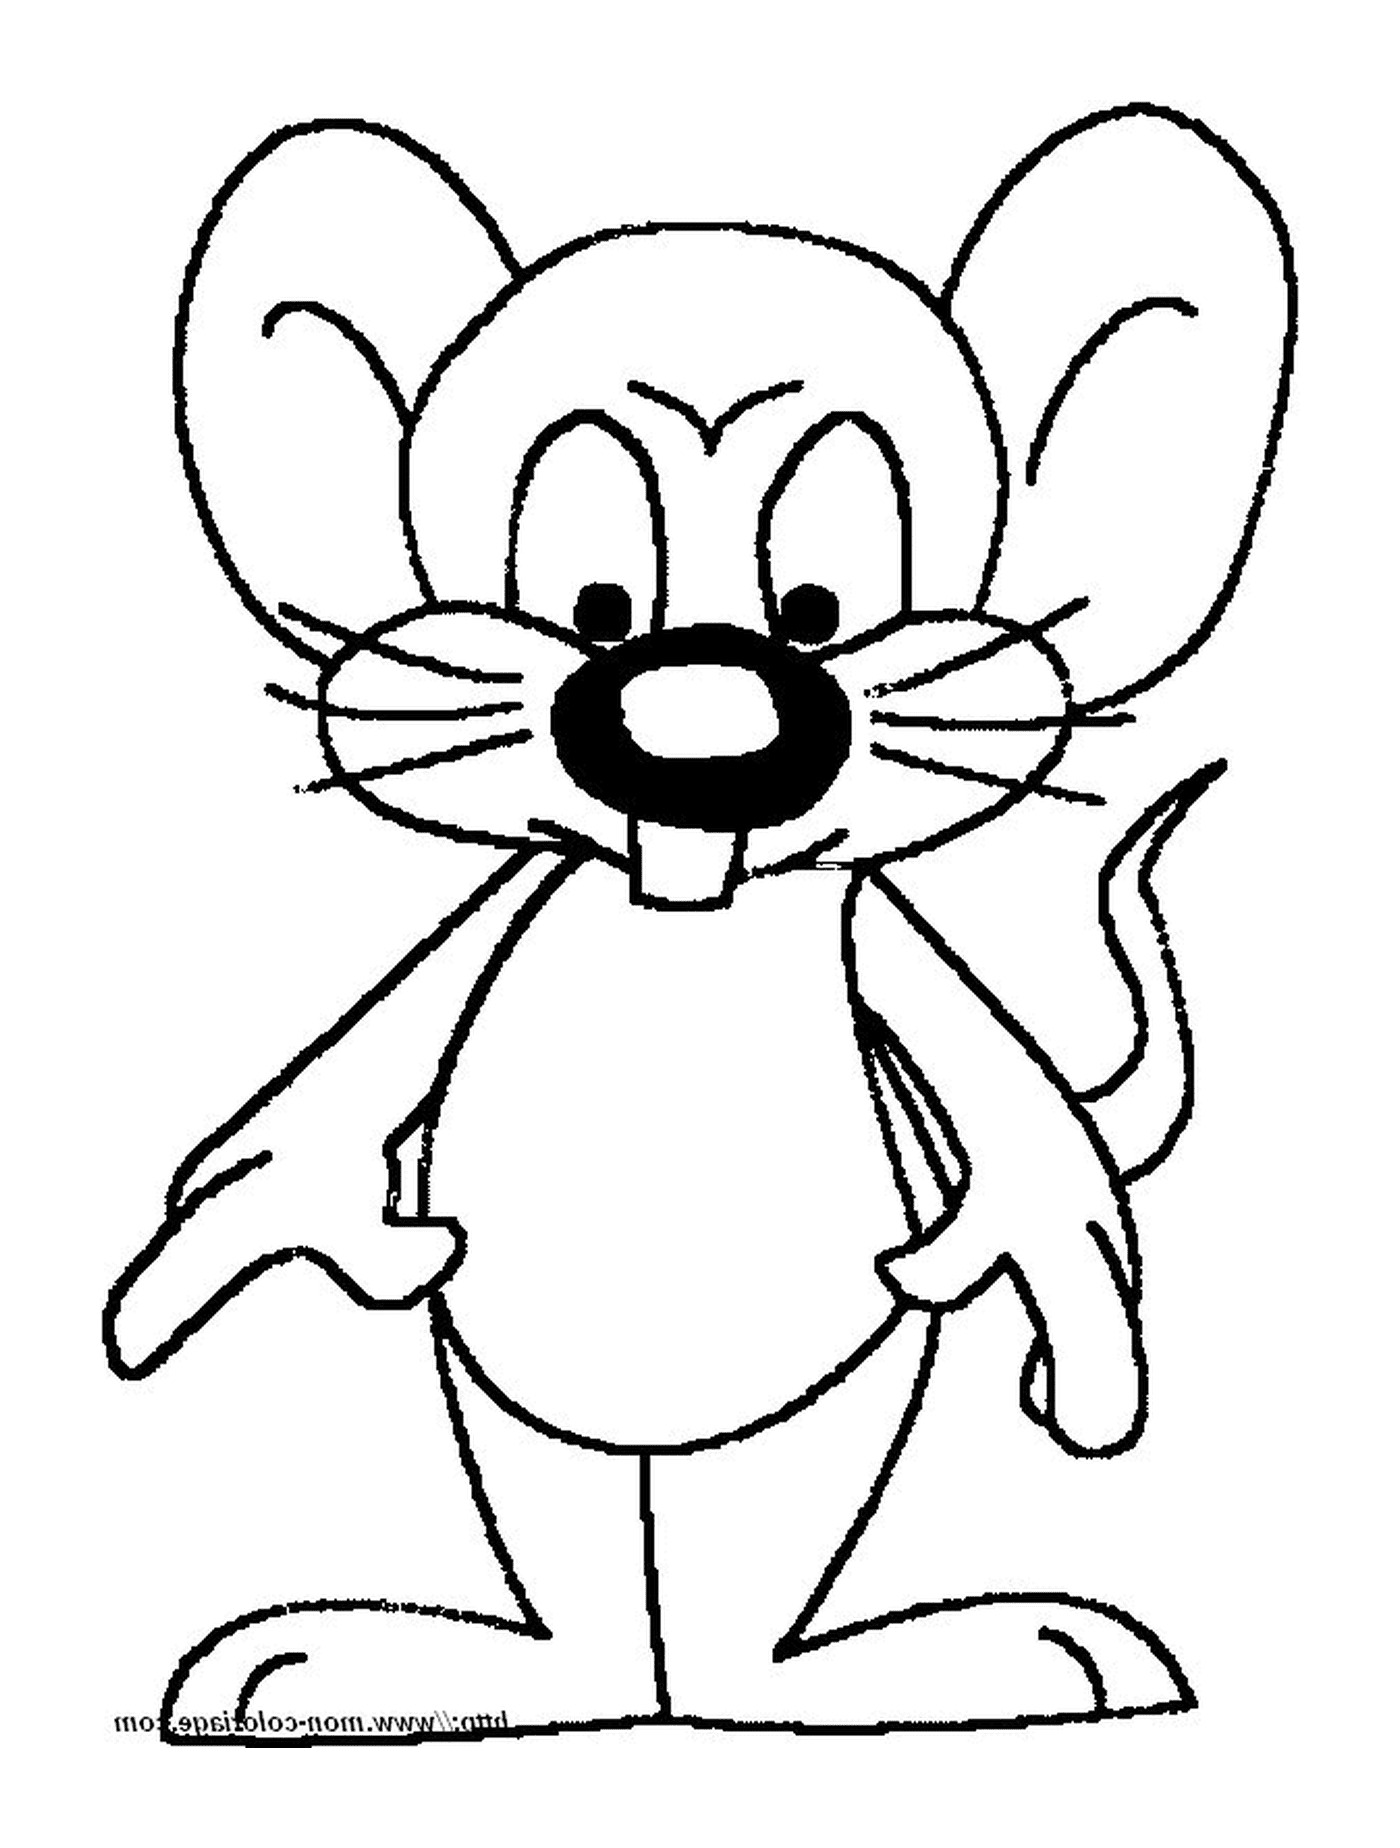  Una cara de ratón 